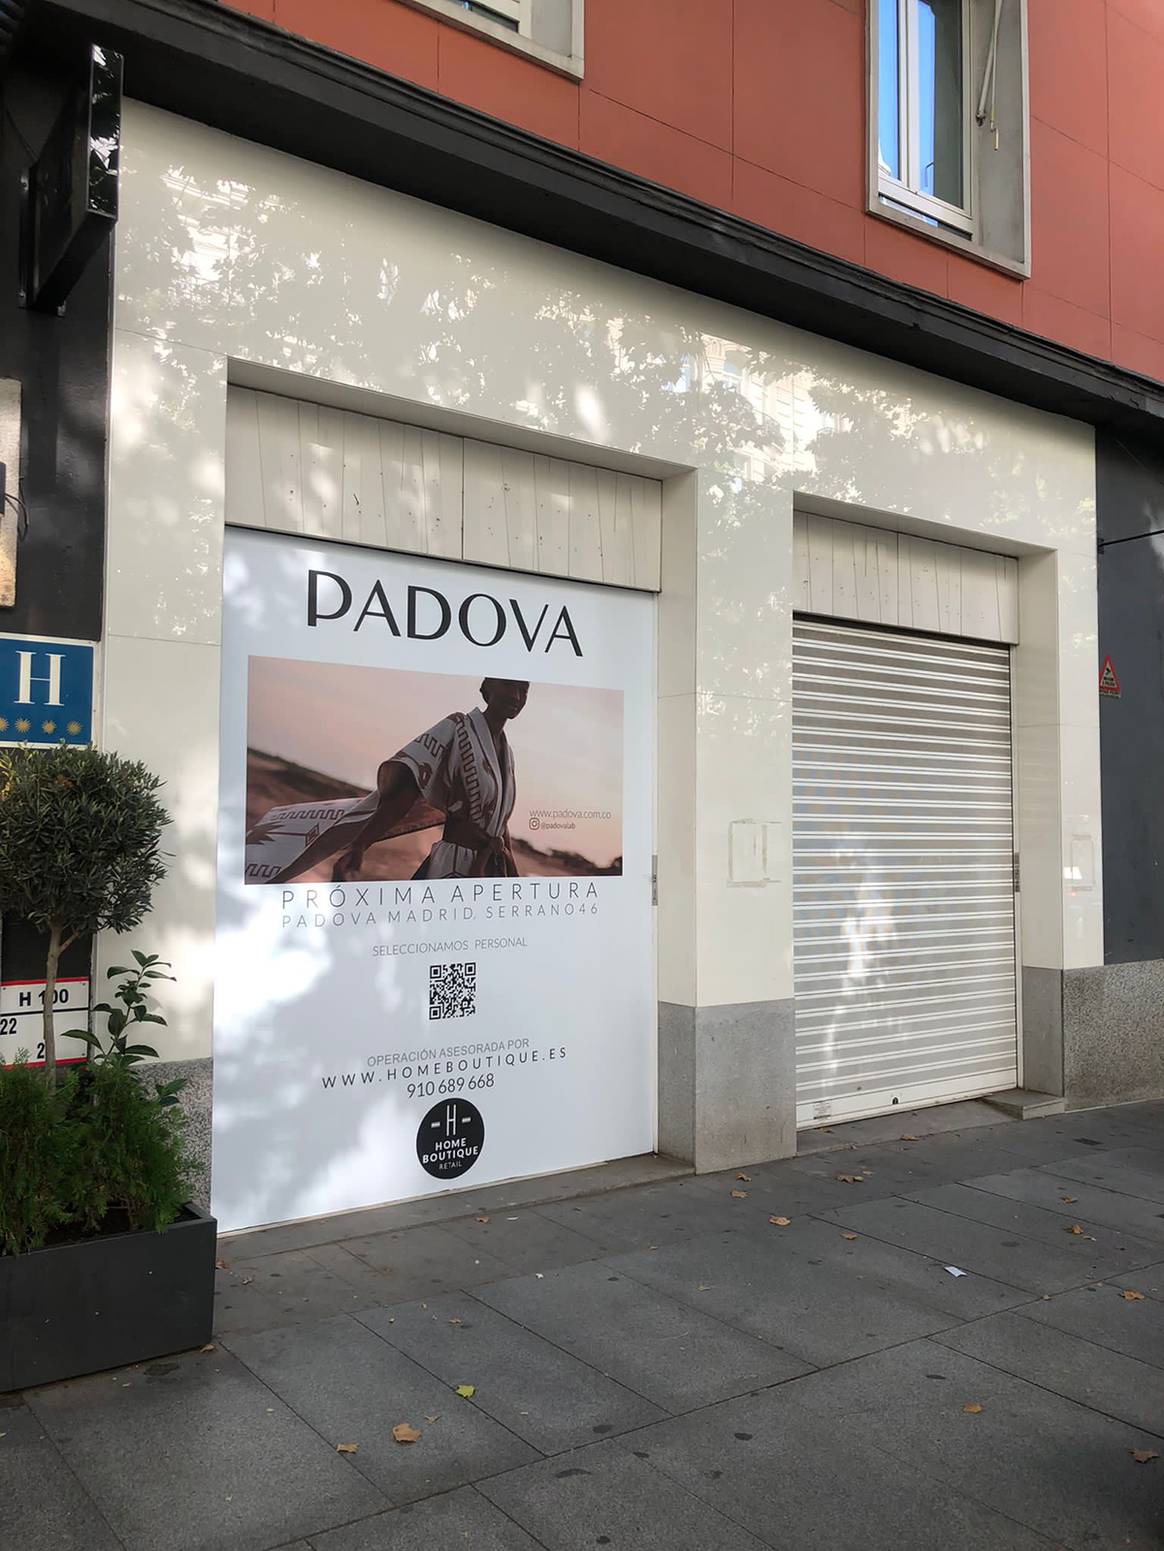 Photo Credits: Próxima tienda de Padova en el número 46 de la calle de Serrano de Madrid. Home Boutique Real Estate, fotografía de cortesía.